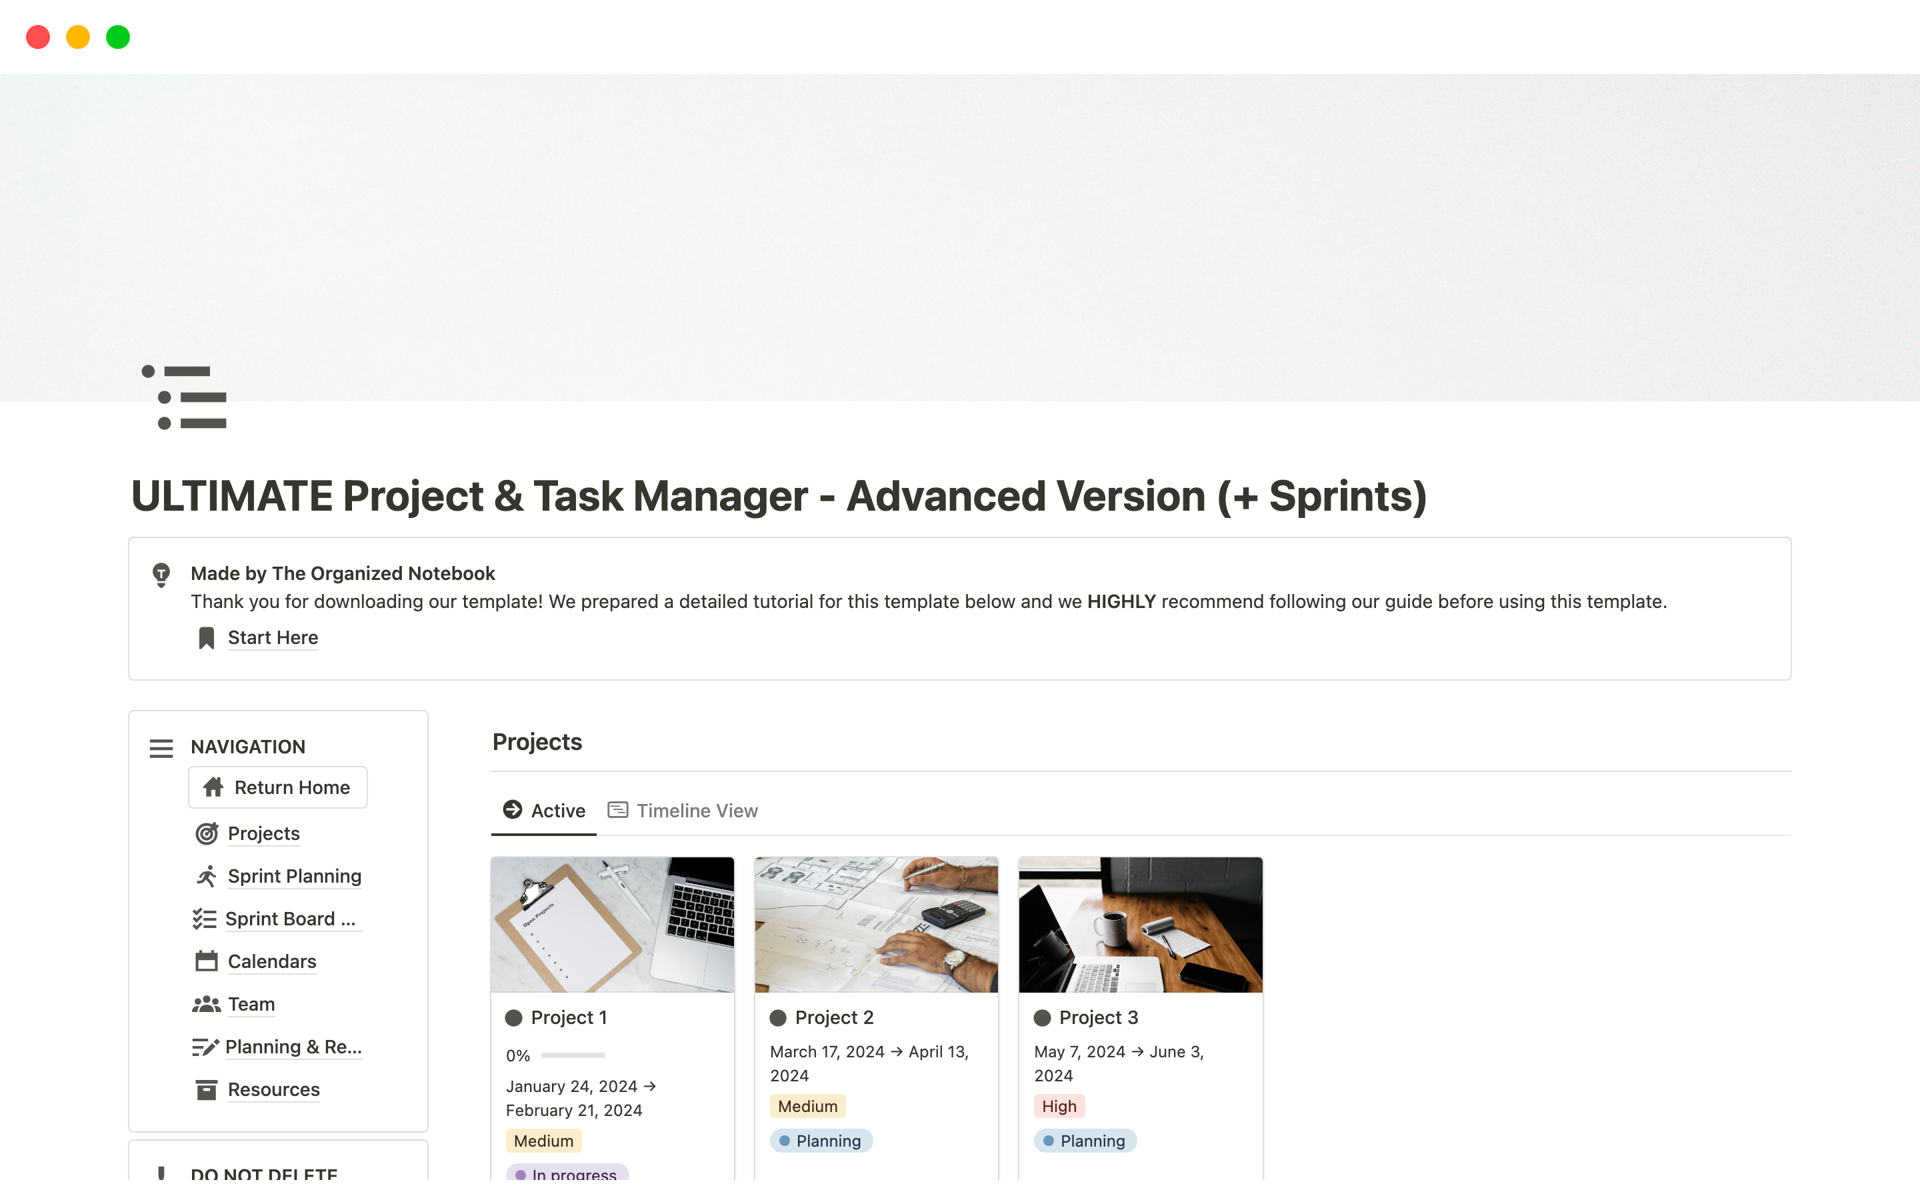 En förhandsgranskning av mallen för ULTIMATE Project & Task Manager - Advanced Version